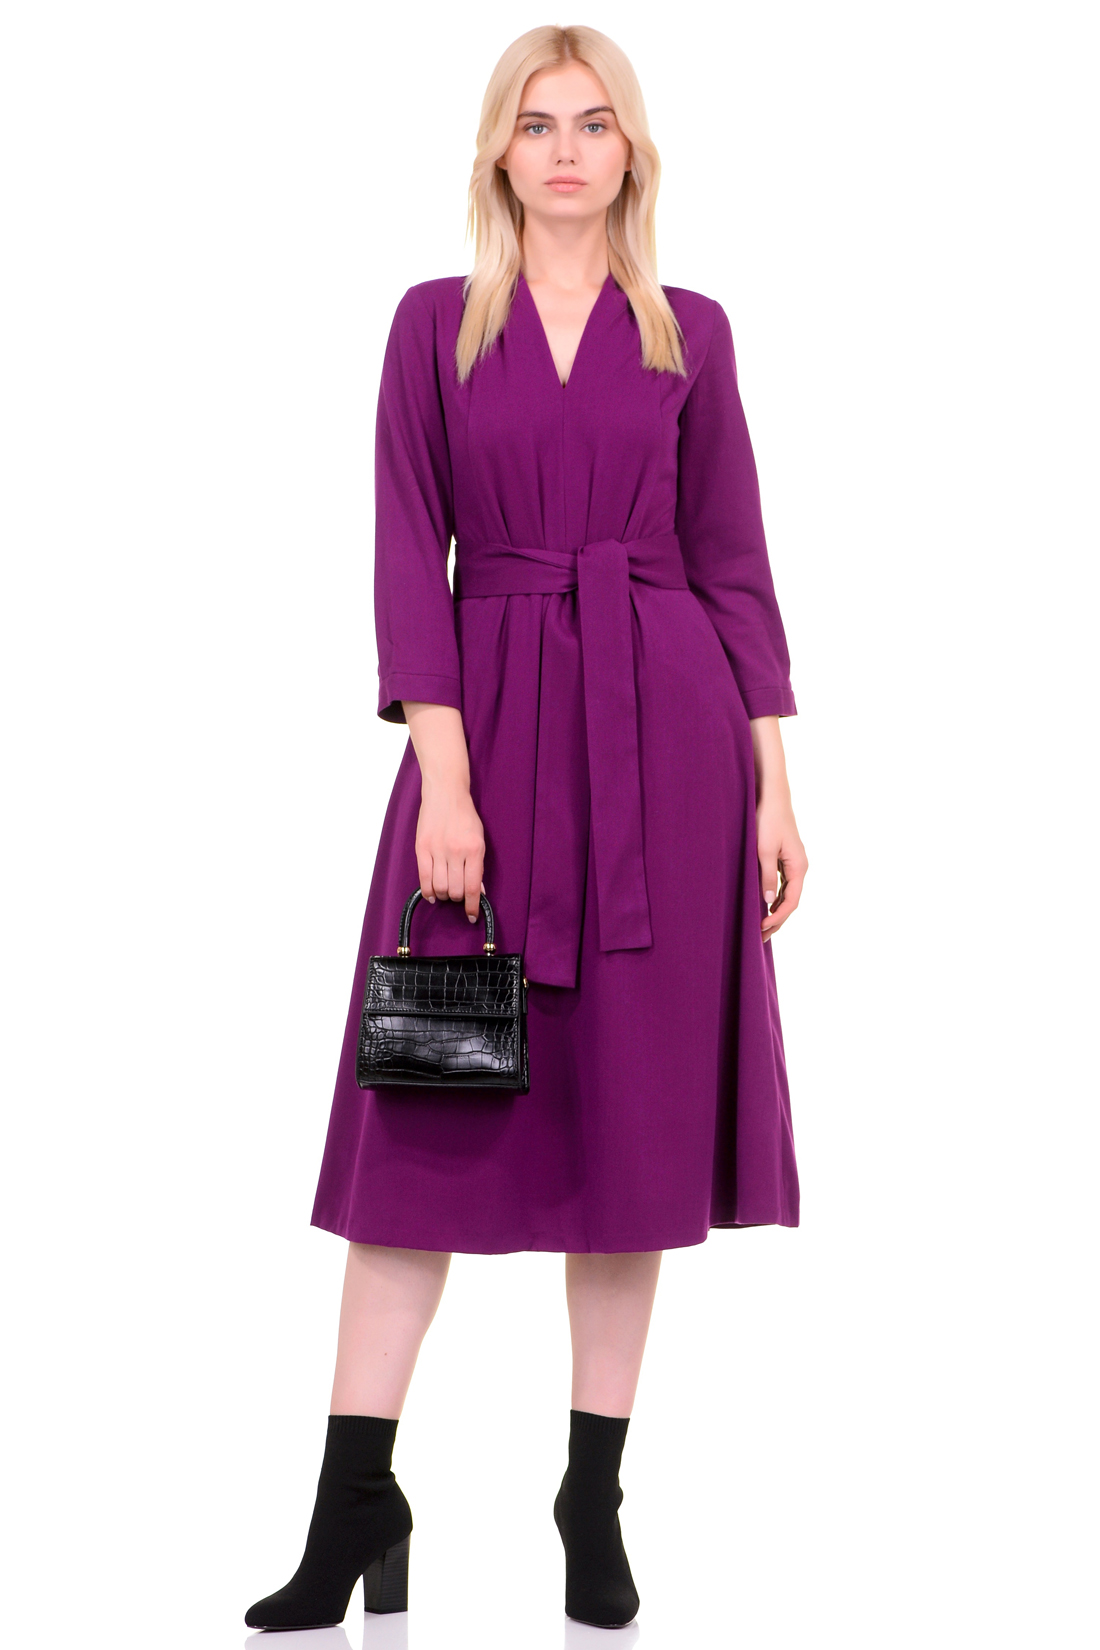 Платье с V-образным вырезом (арт. baon B459549), размер XS, цвет фиолетовый Платье с V-образным вырезом (арт. baon B459549) - фото 1